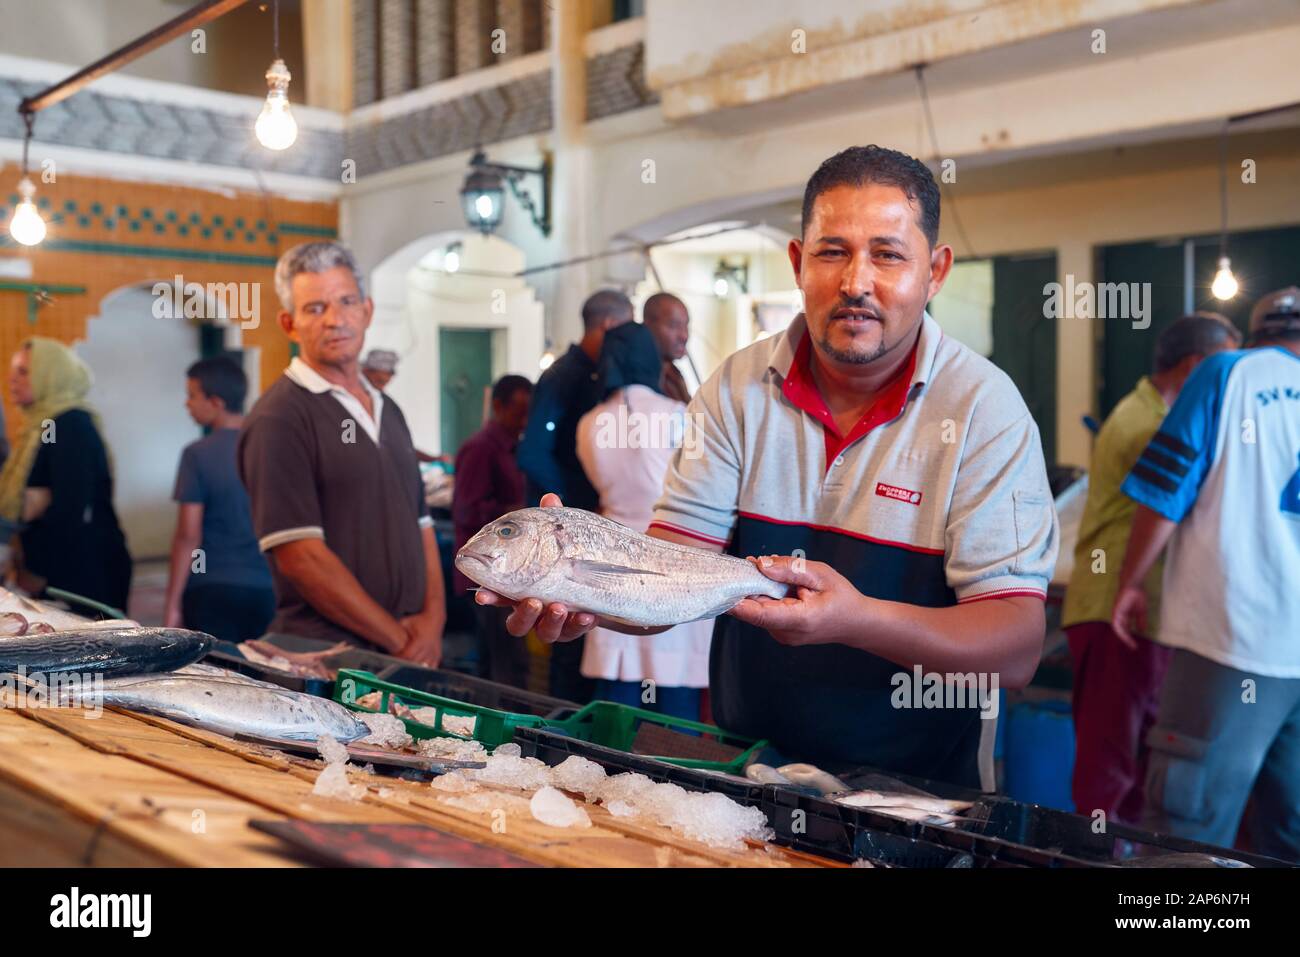 Tunisie, 10 octobre 2019 marché traditionnel du poisson tunisien, le poissonnier montre du poisson frais à vendre Banque D'Images